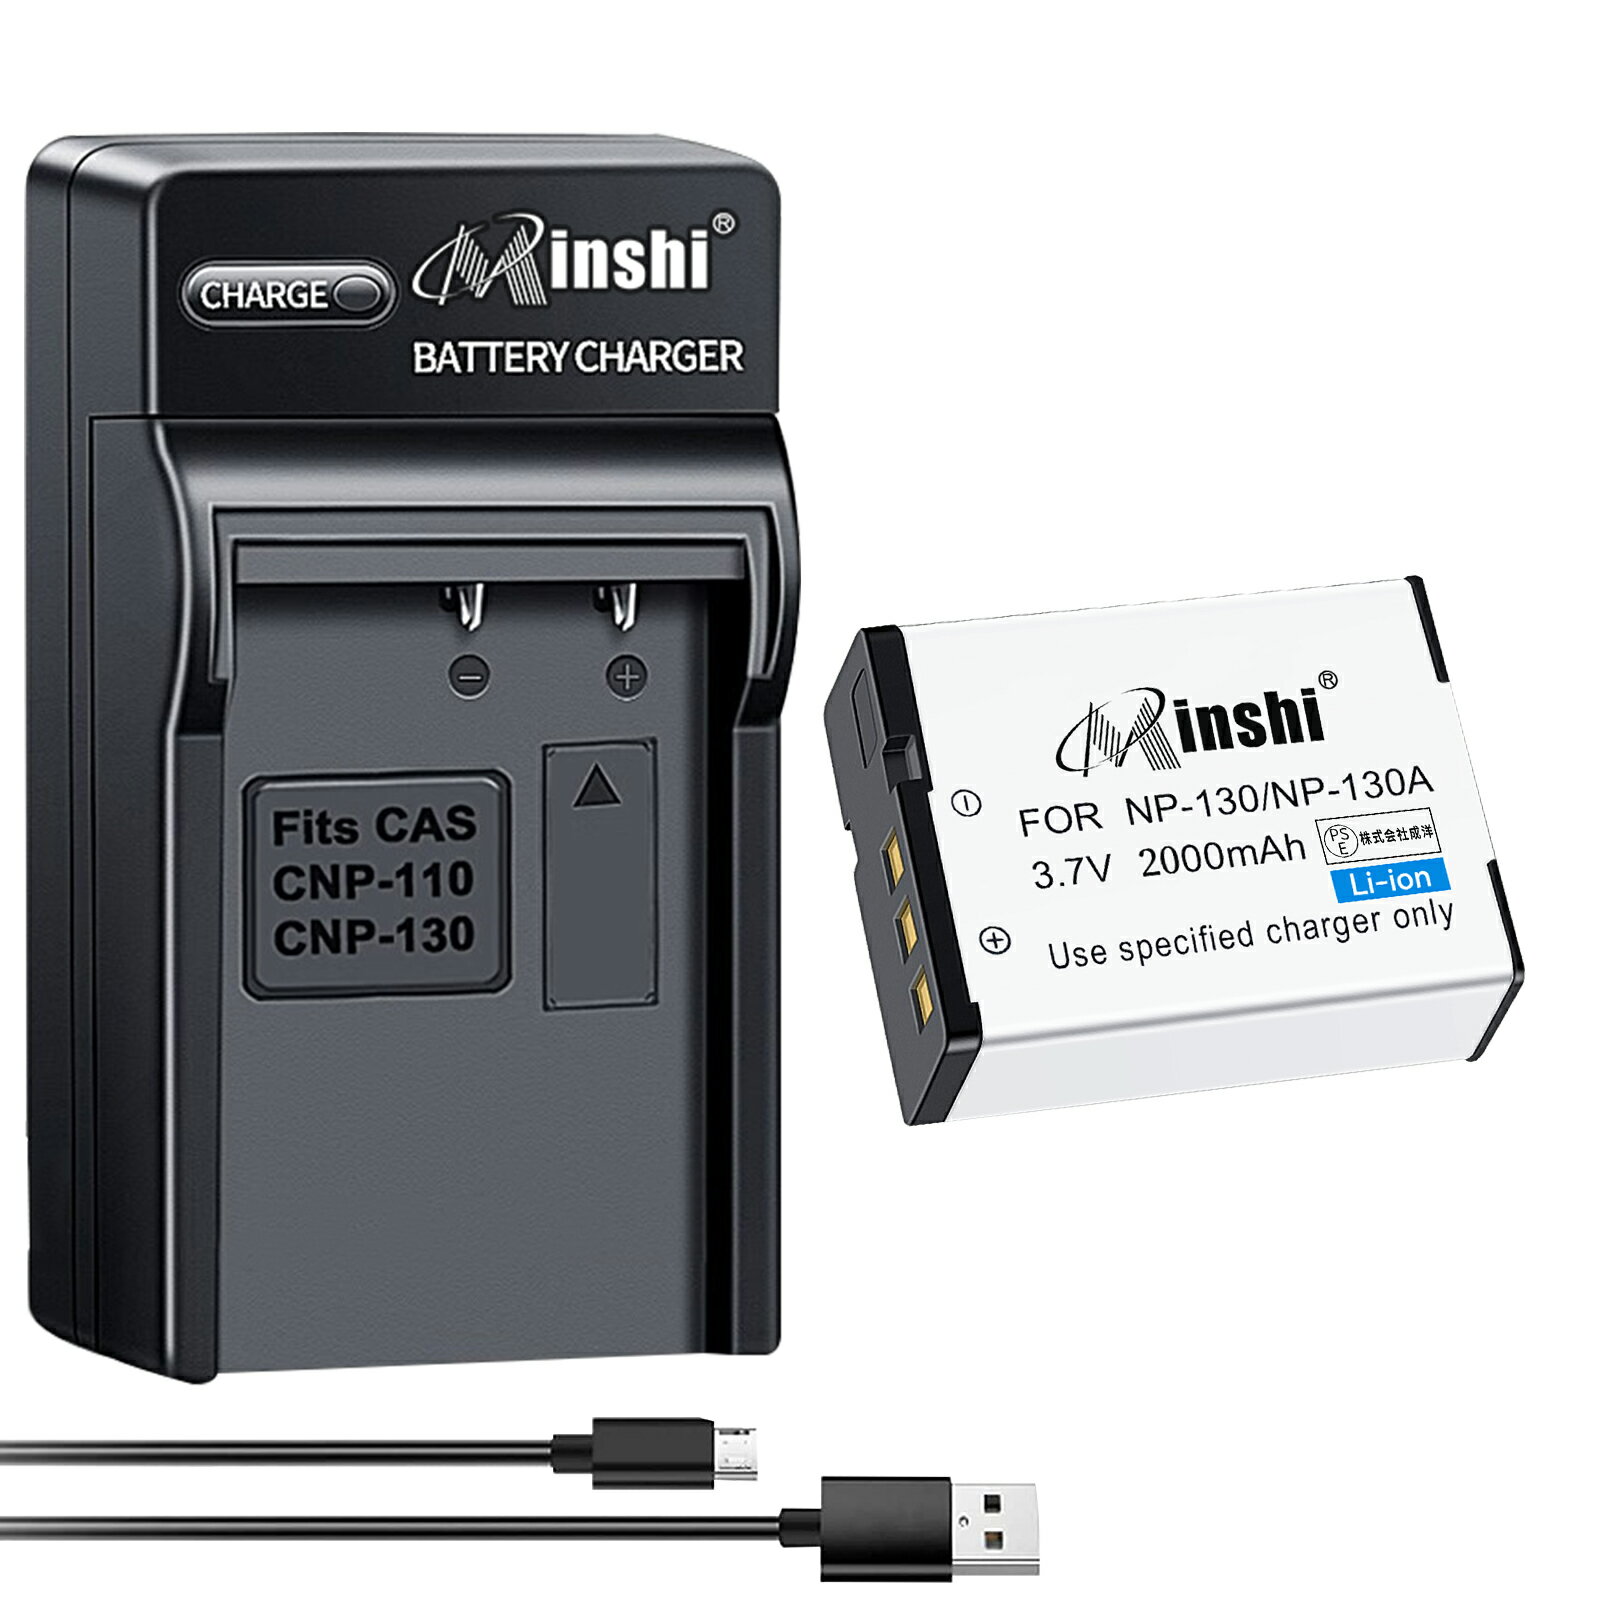 【USB充電器と電池1個】minshi 新品 Casio EX-ZR300 互換バッテリー 2000mAh 高品質交換用リチャージブル カメラバッテリー リチウムイオンバッテリー デジタルカメラ デジカメ 充電池 PSE認証 1年間保証 予備バッテリー